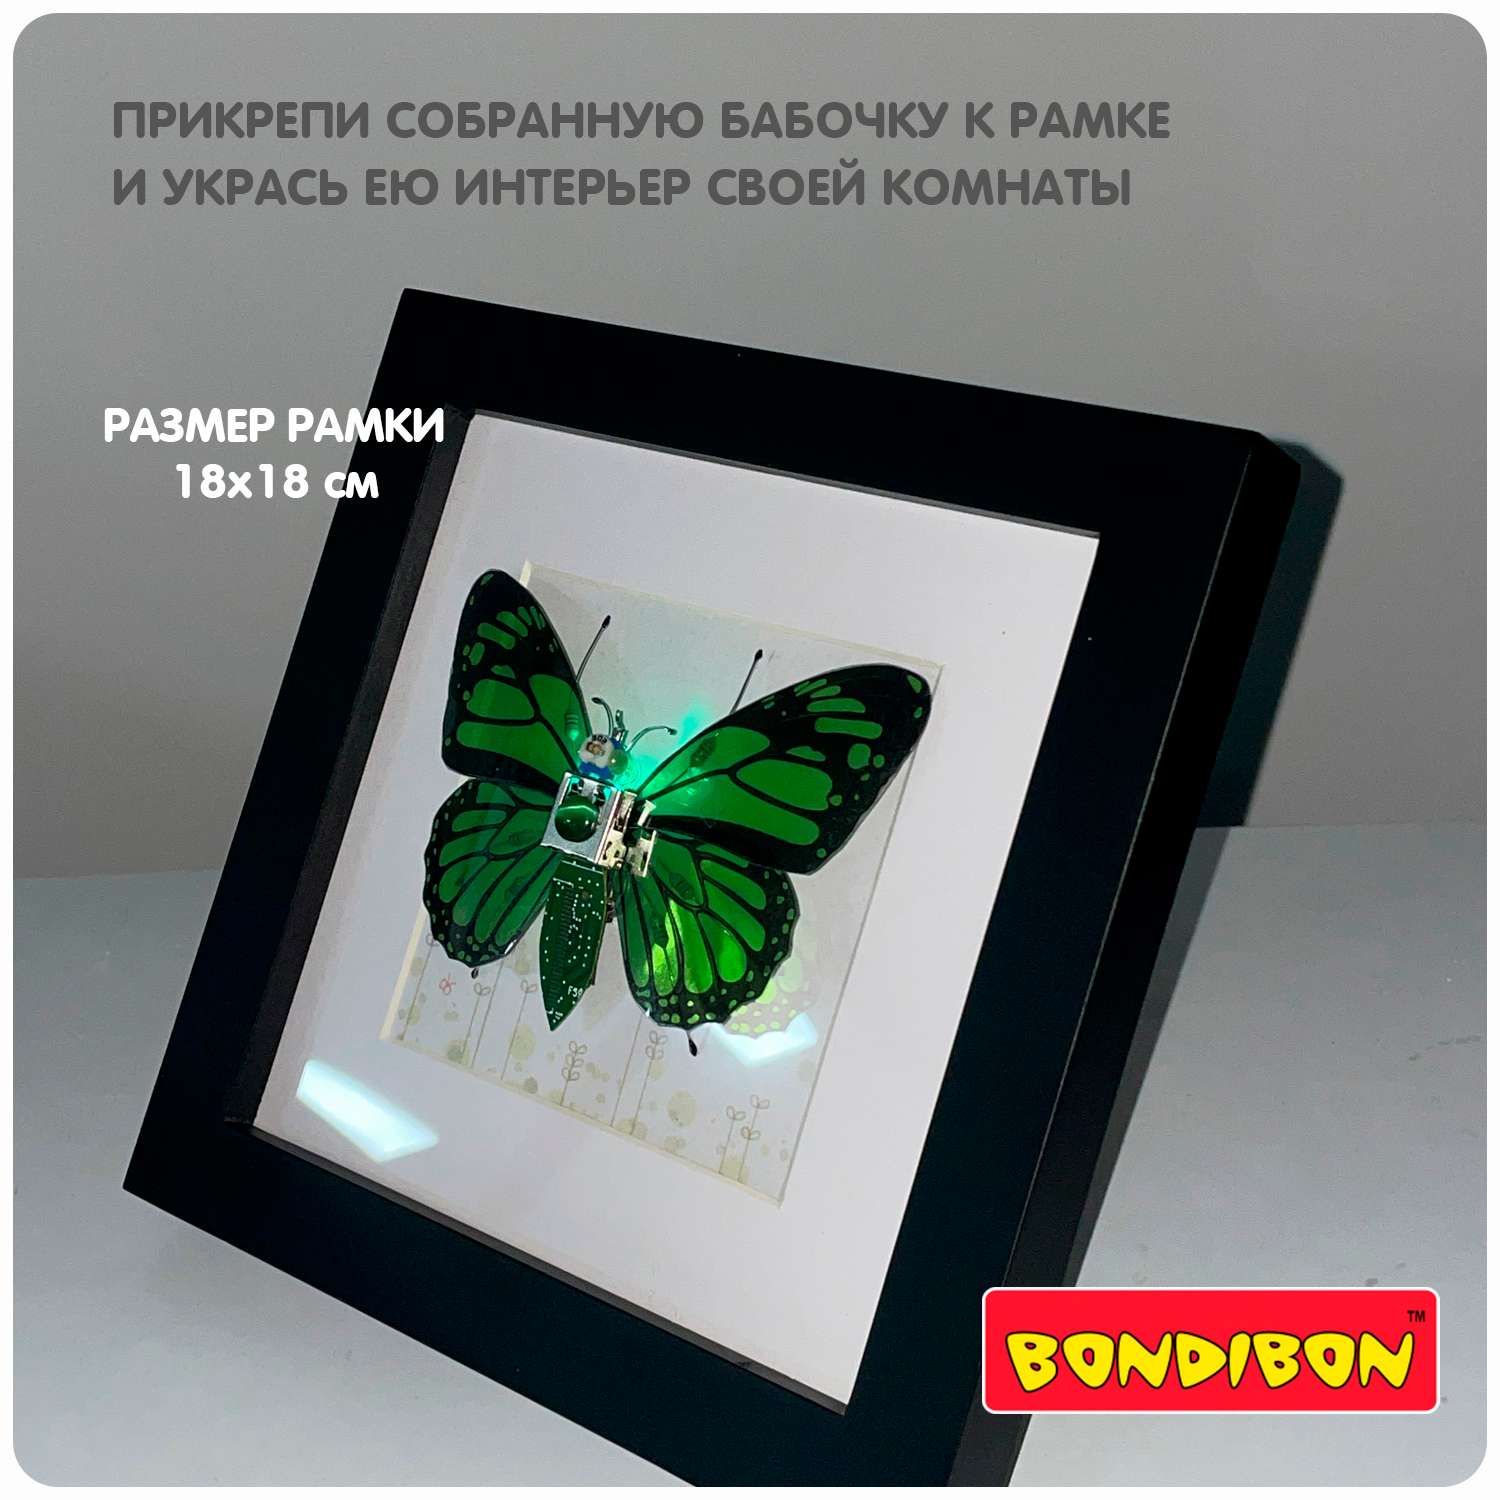 Набор для творчества BONDIBON картина Кибер-бабочка с подсветкой клеевым пистолетом и элементами электроники - фото 7